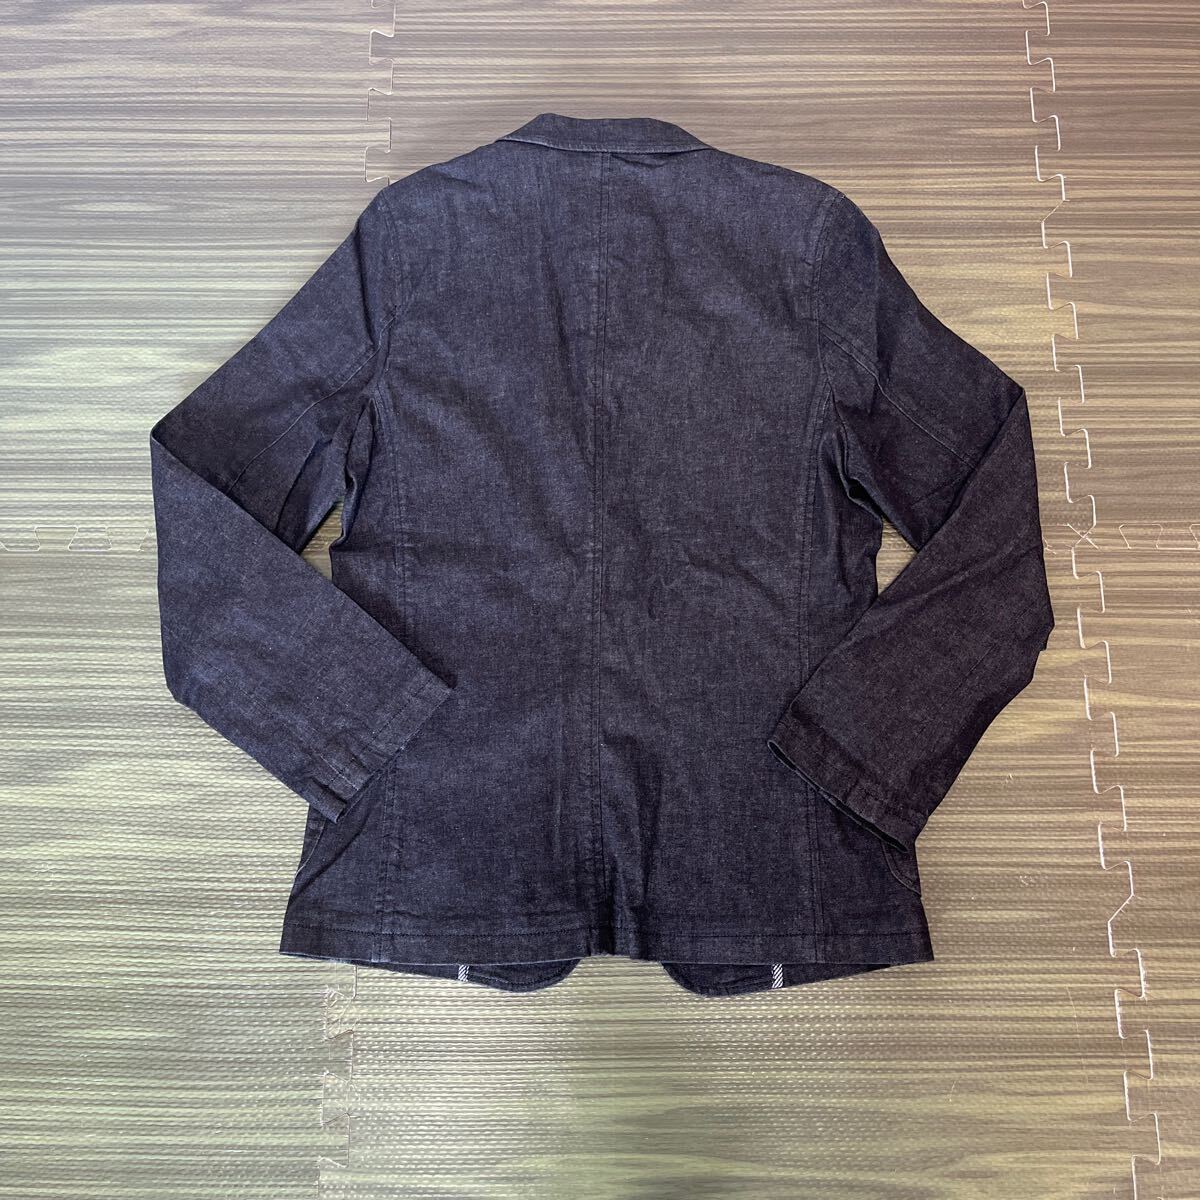 5-6 new goods BLUE CROSS black Denim stretch jacket tailored Denim jacket Kids L 160 18,800 jpy + tax 